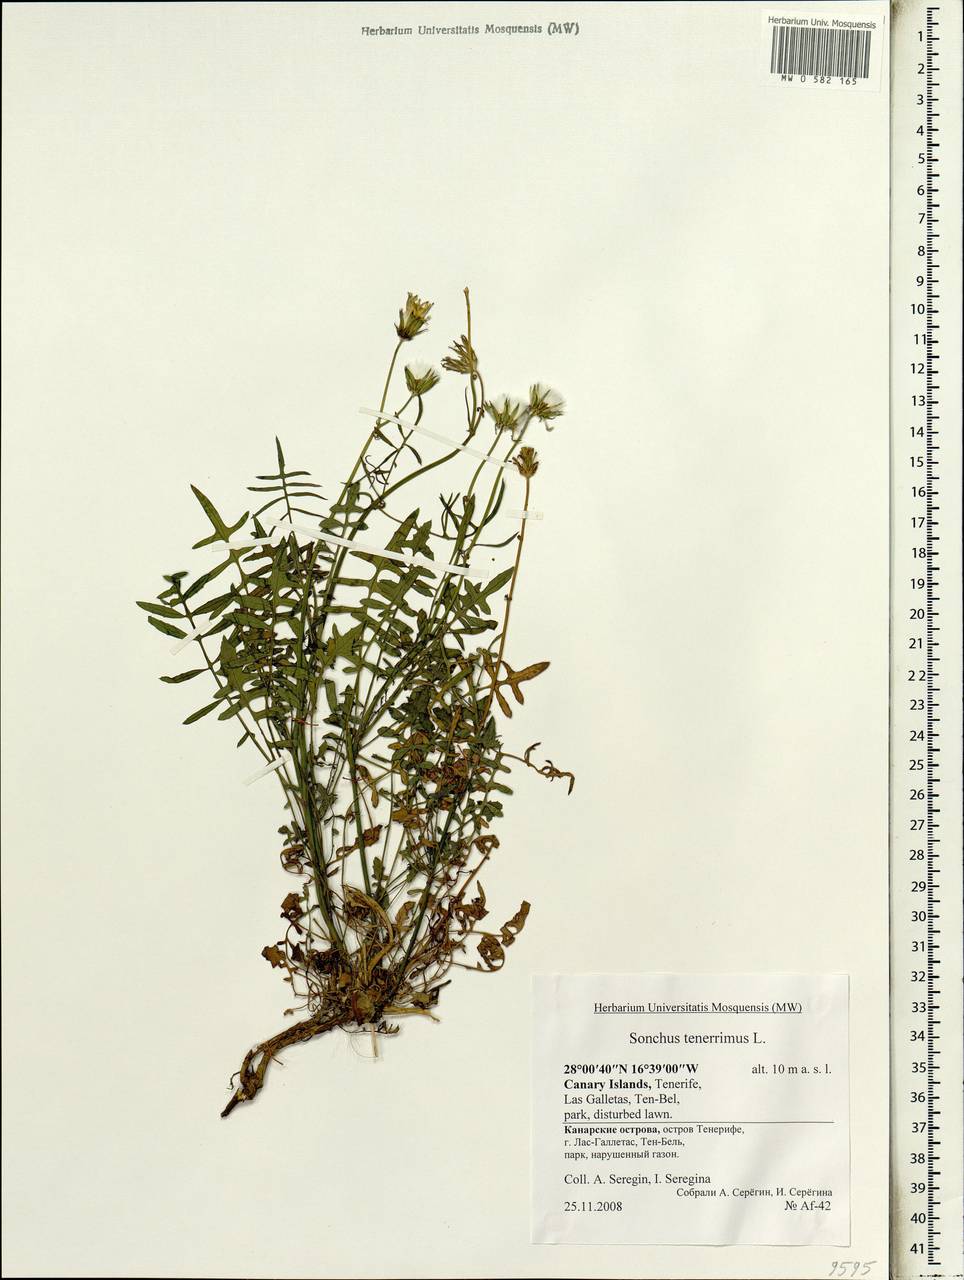 Sonchus tenerrimus L., Africa (AFR) (Spain)